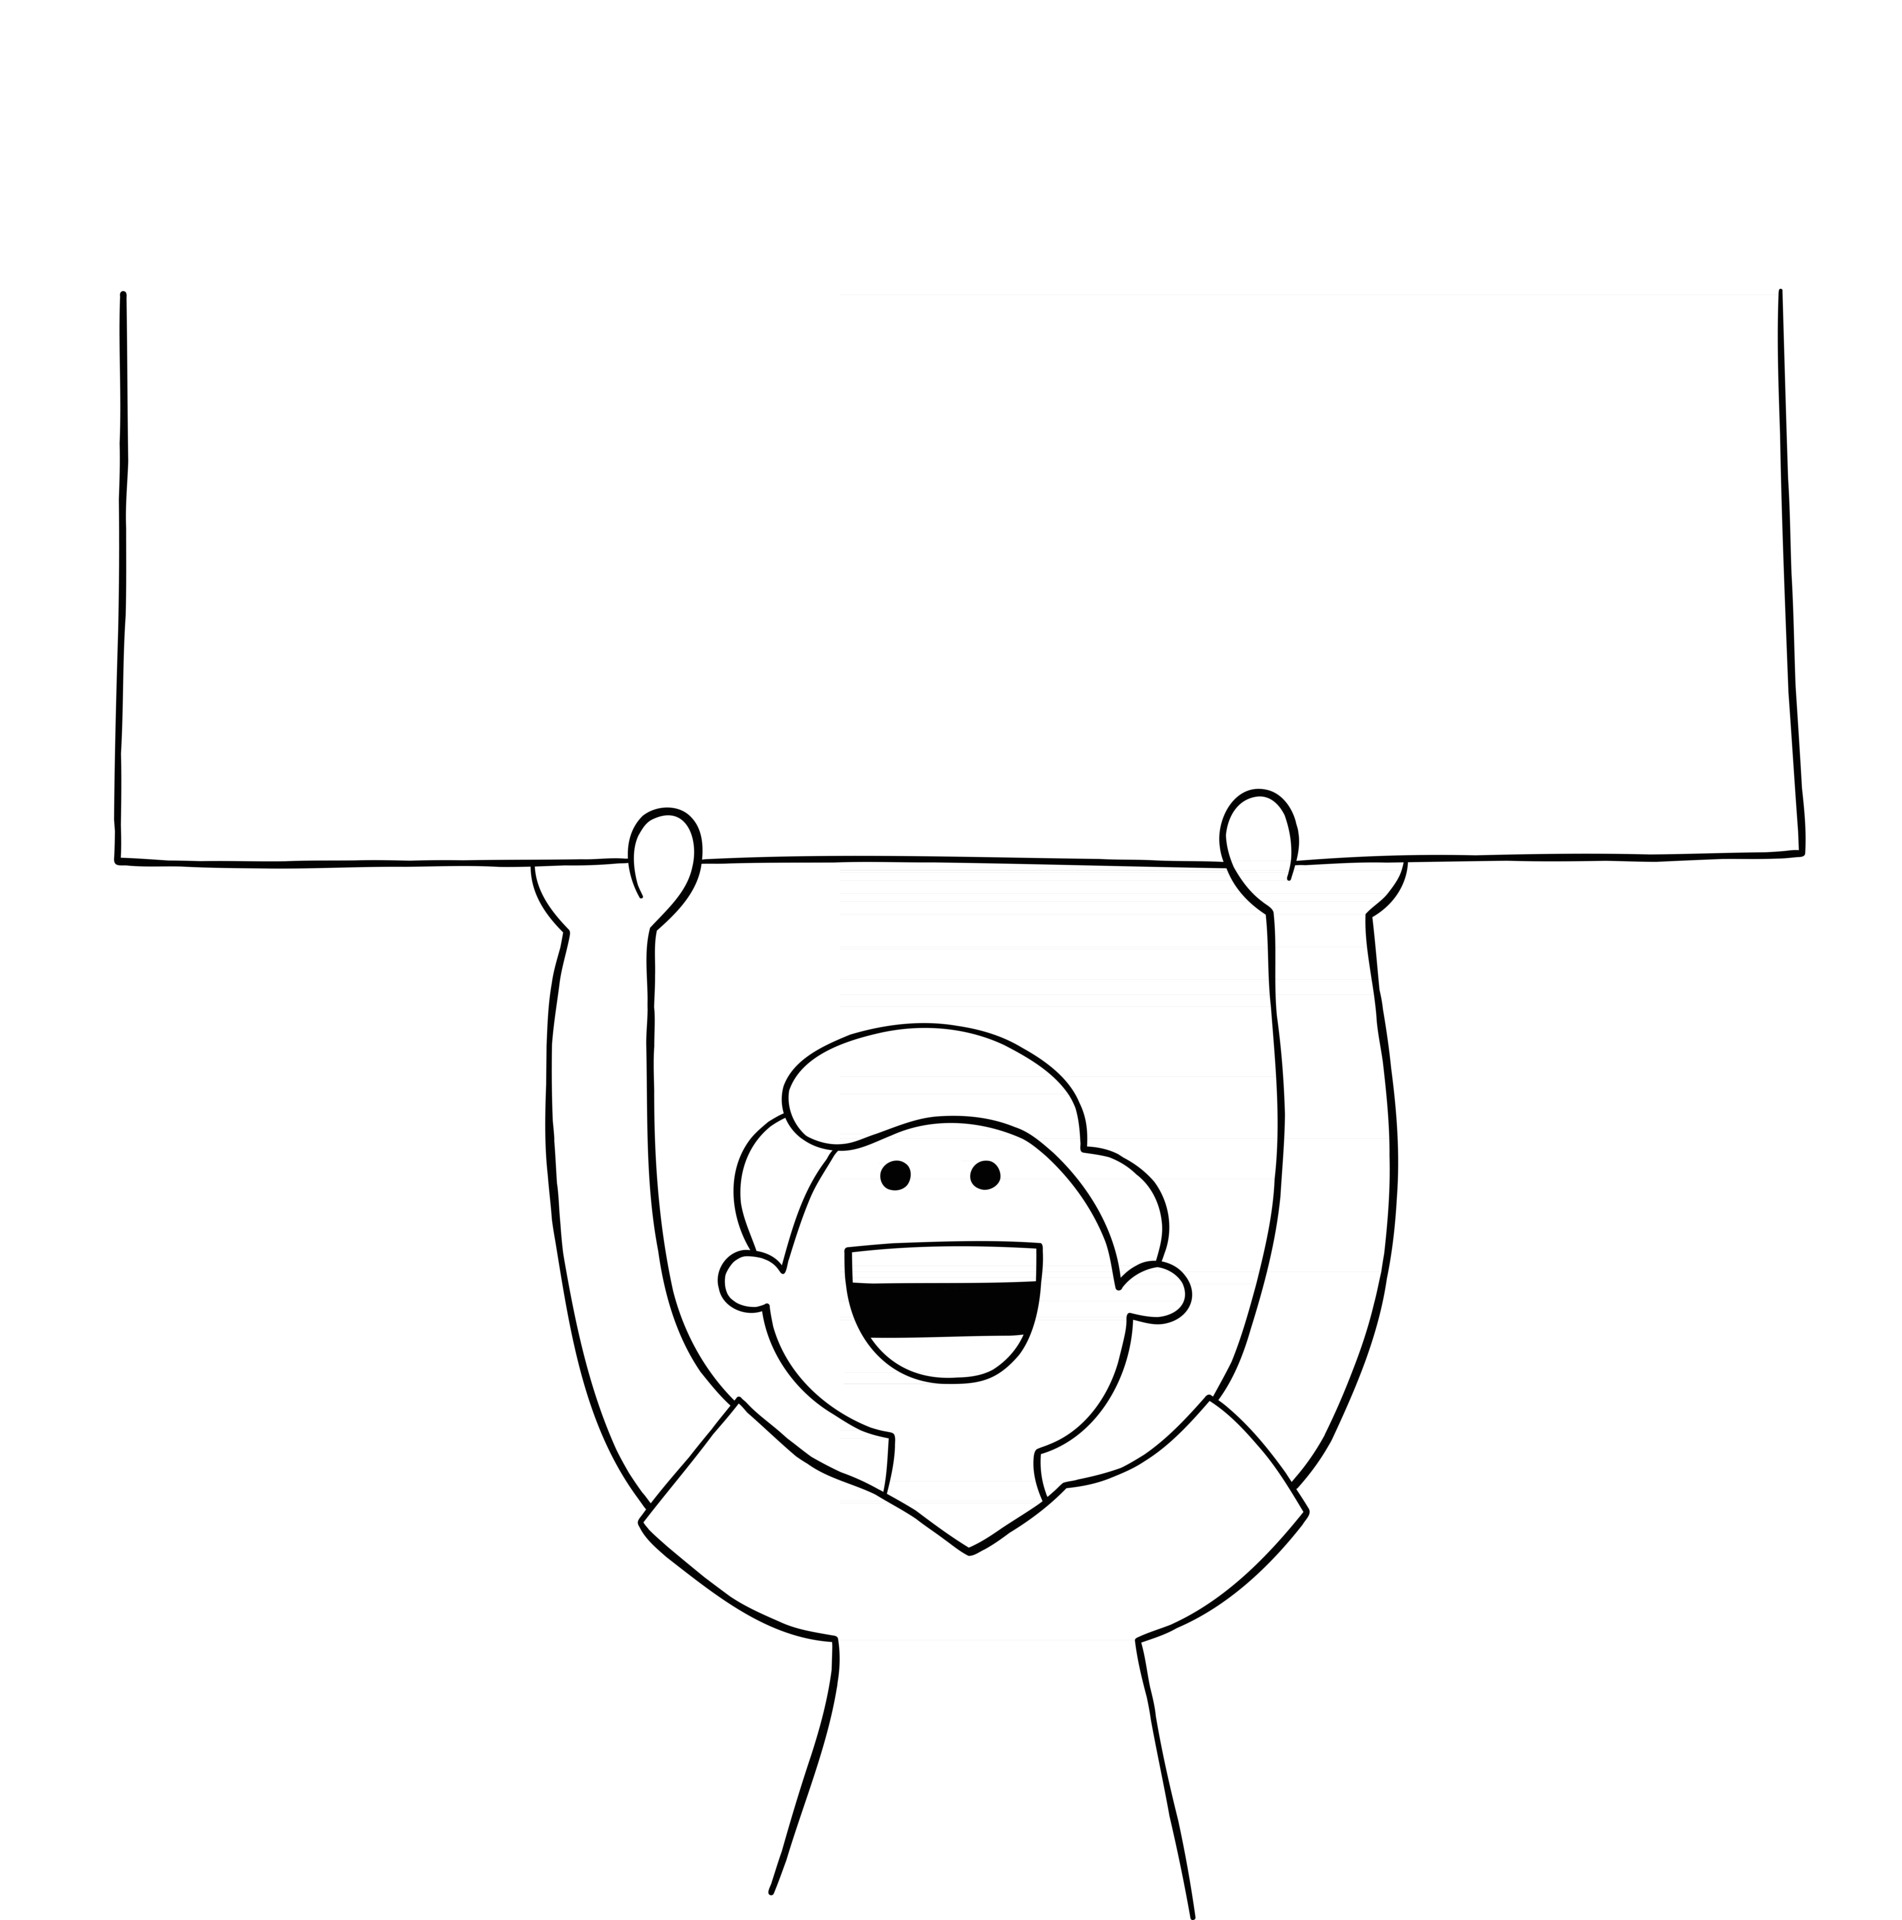 Cartoon man holding blank sign upwards, vector illustration 2959089 Vector  Art at Vecteezy